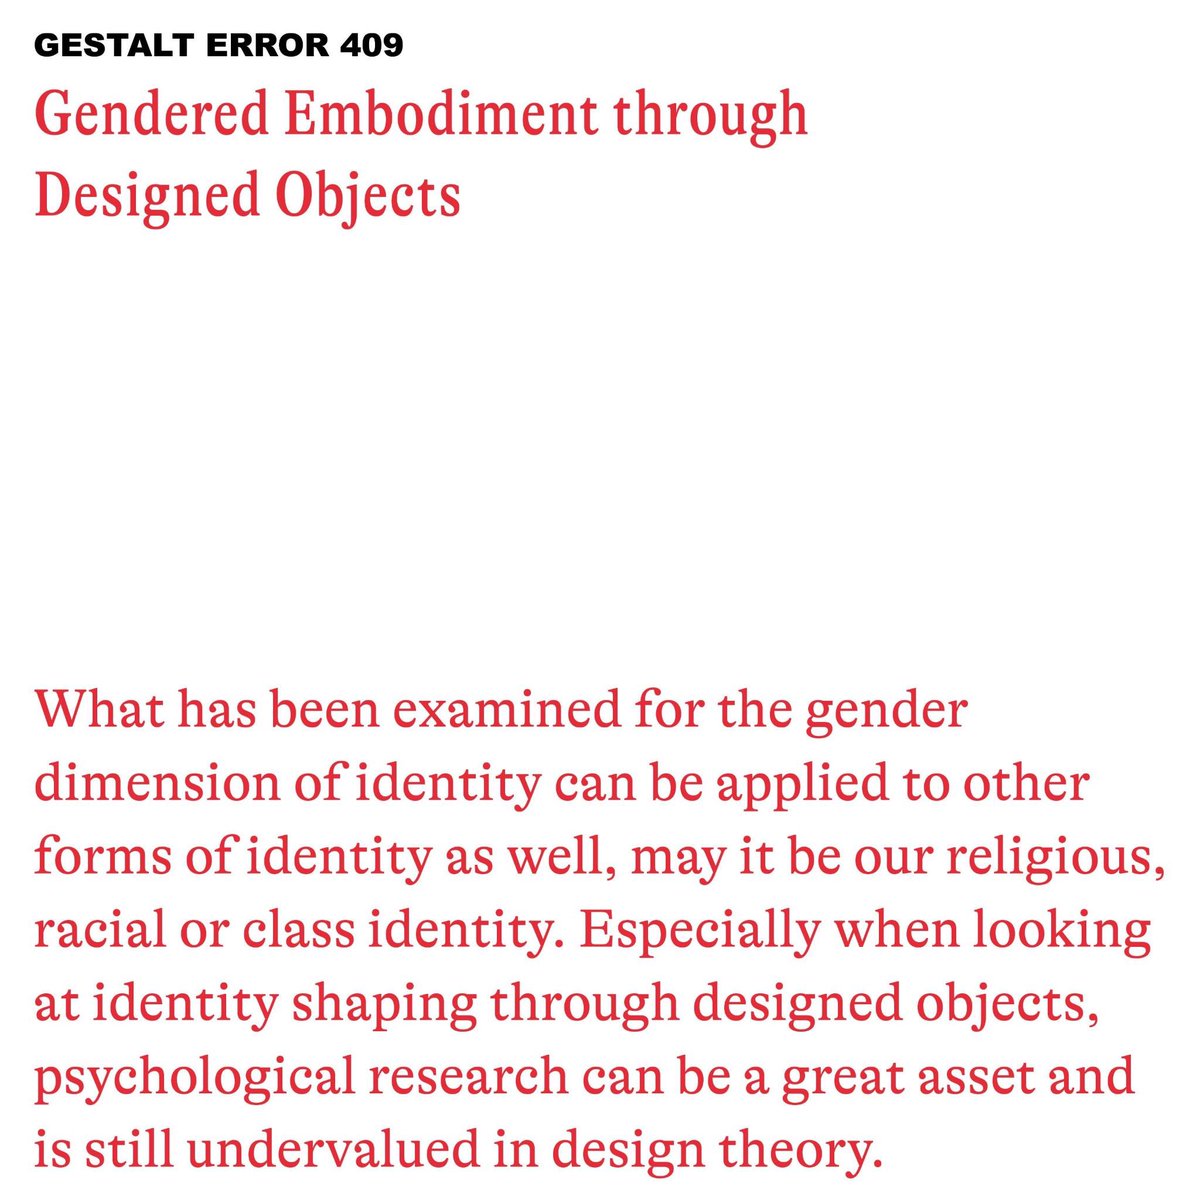 Hot of the press: Anis Looalian über Gendered Embodiment through Designed Objects! Jetzt auf unserer Webpage nachzulesen 😎 gestalt-error-409.de/gender-embodim… #design #gender #objects